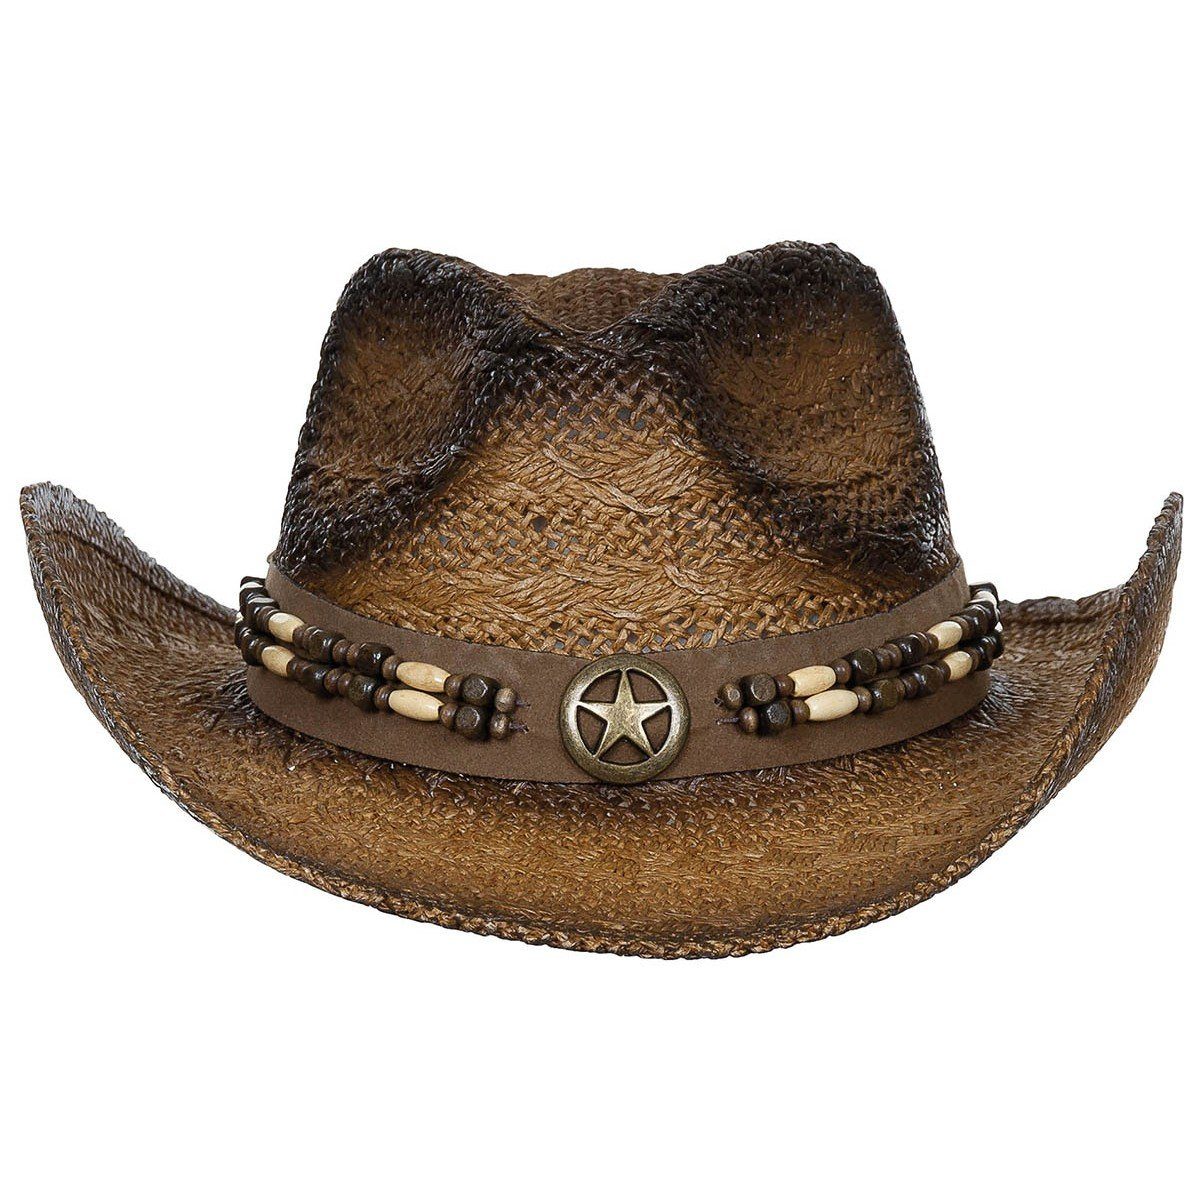 mit "Tennessee", FoxOutdoor Western mit Hutband, Strohhut, braun-schwarz Style Hutband Strohhut